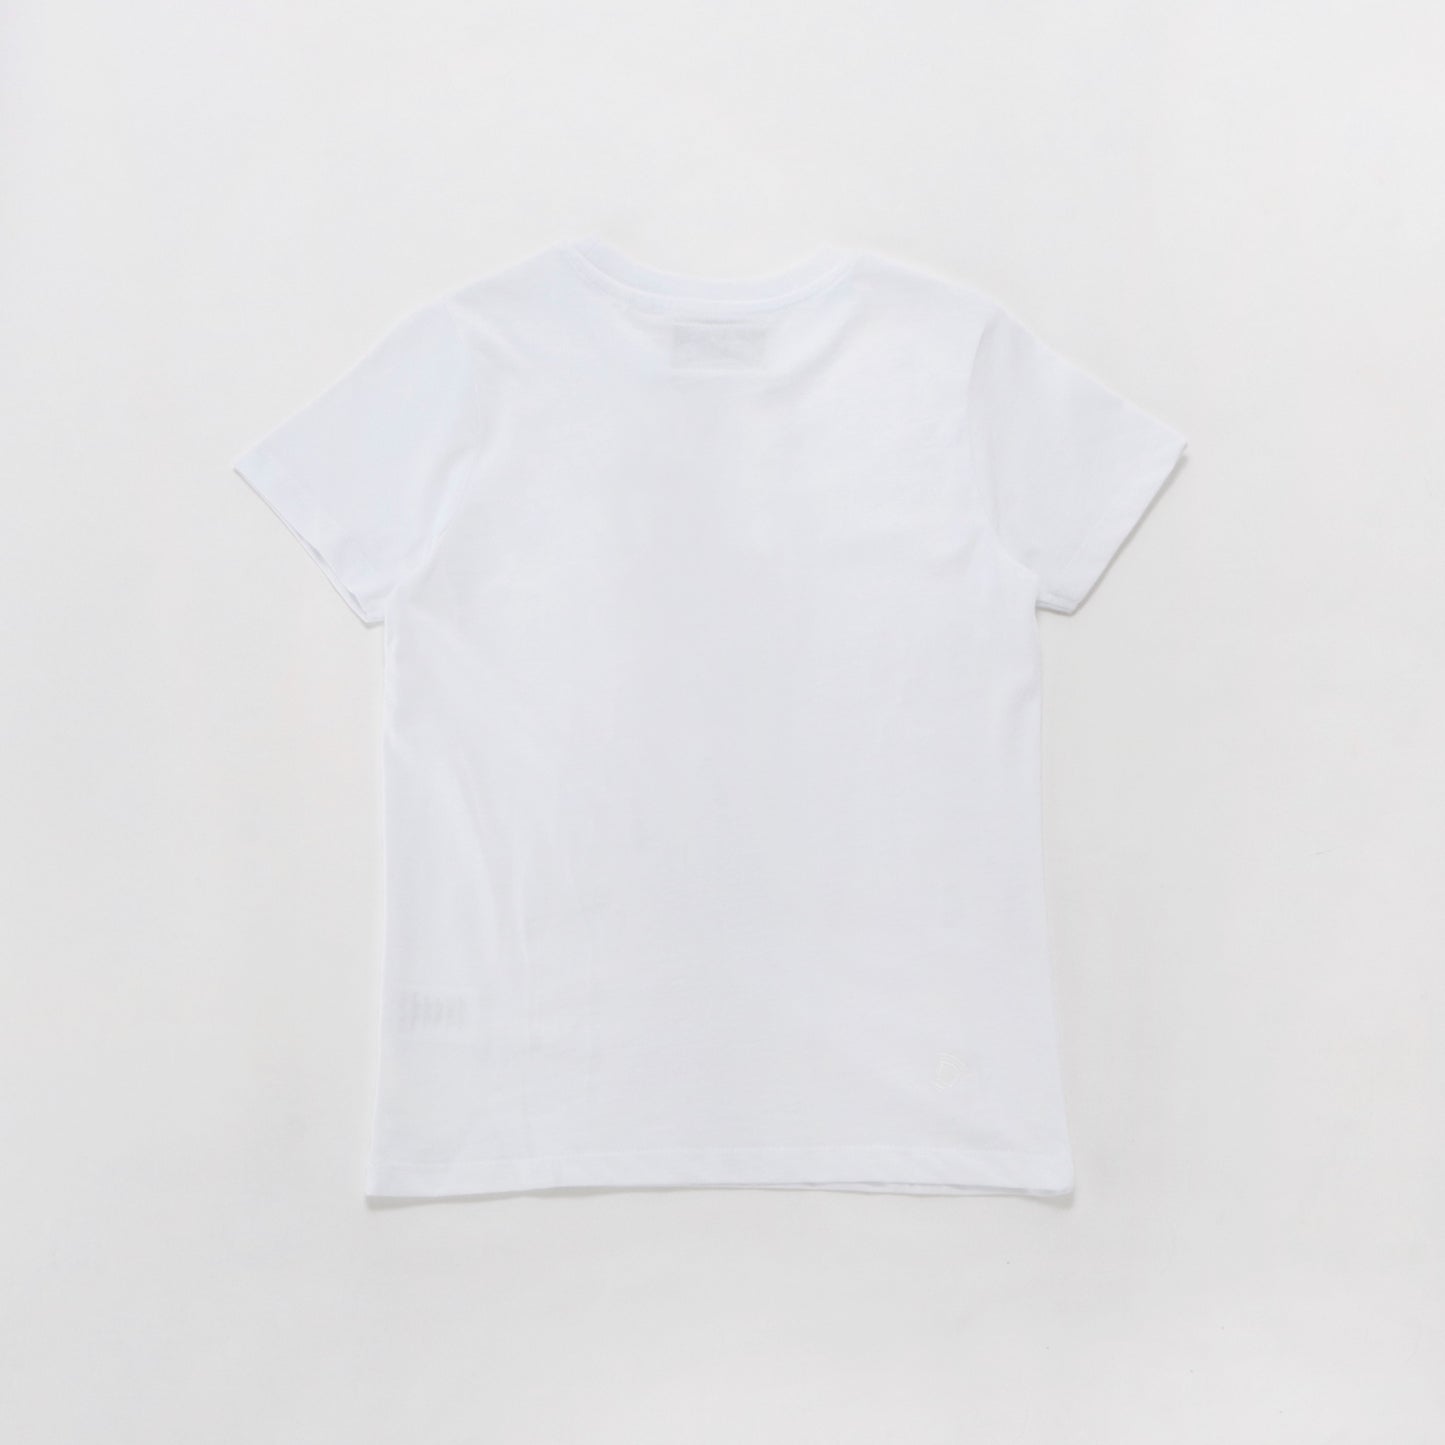 REEO DE JANEIRO KIDS Tシャツ - KIDS - ホワイト